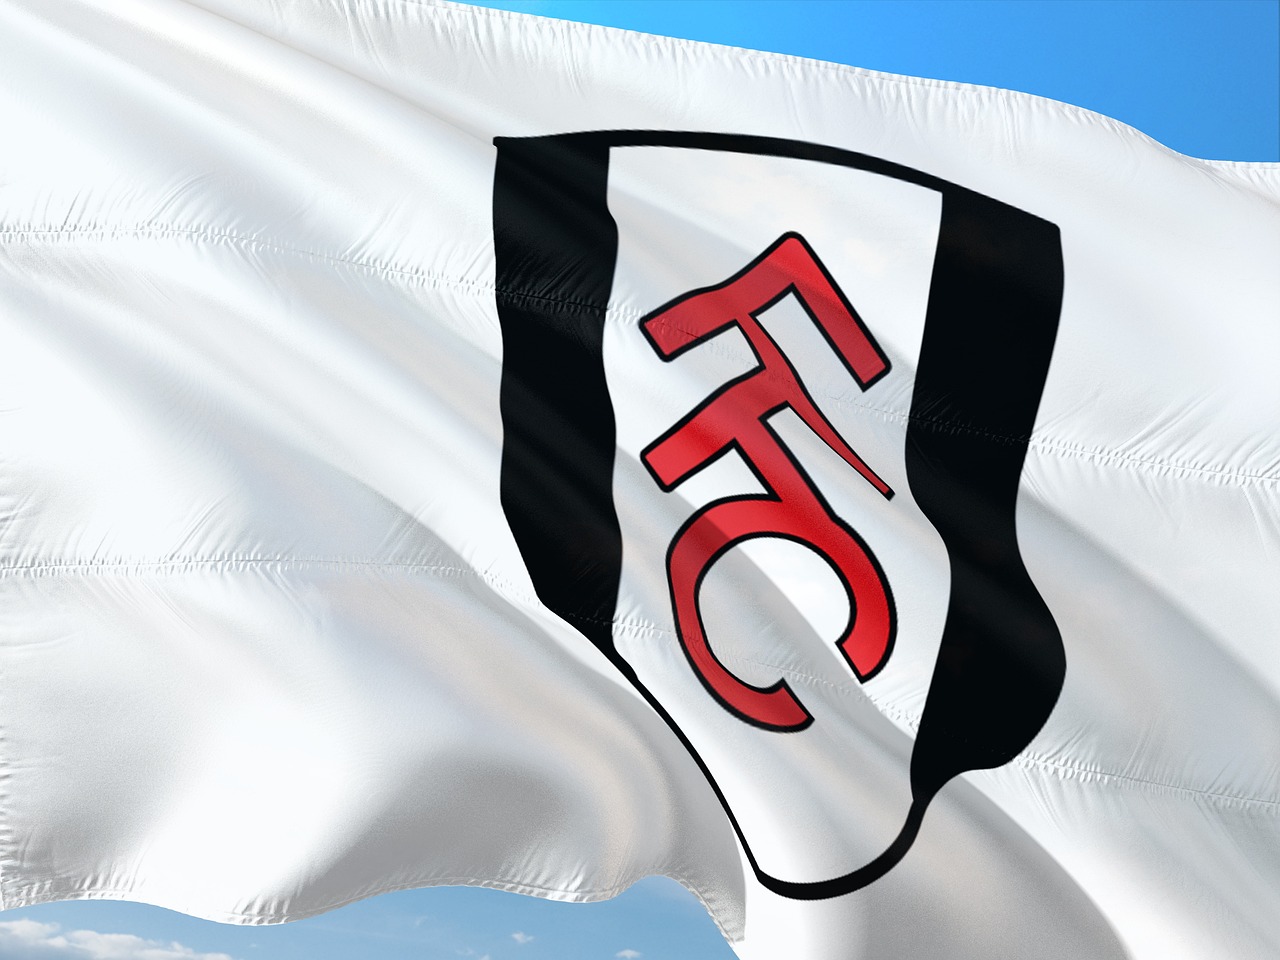 Câu lạc bộ Fulham Lịch sử, đội hình và cách xem trực tiếp ngoại hạng Anh